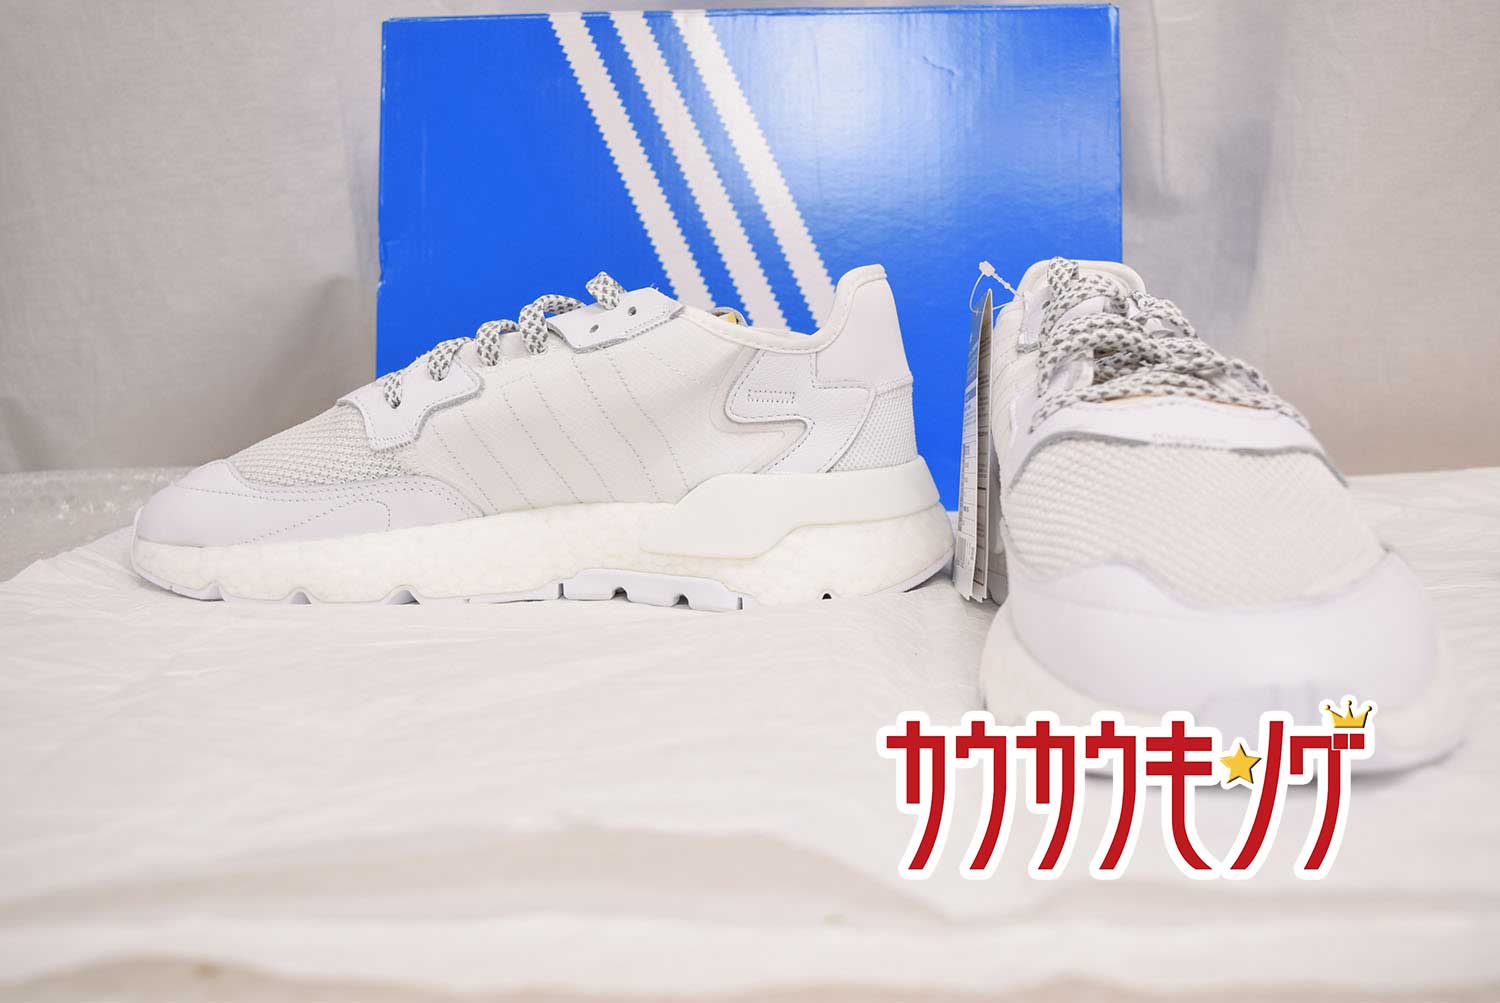 【中古】(未使用) adidas/アディダス NITE JOGGER ナイト ジョガー RUNNING WHITE/CRYSTAL 白 BD7676 サイズ28.0cm 19年新作